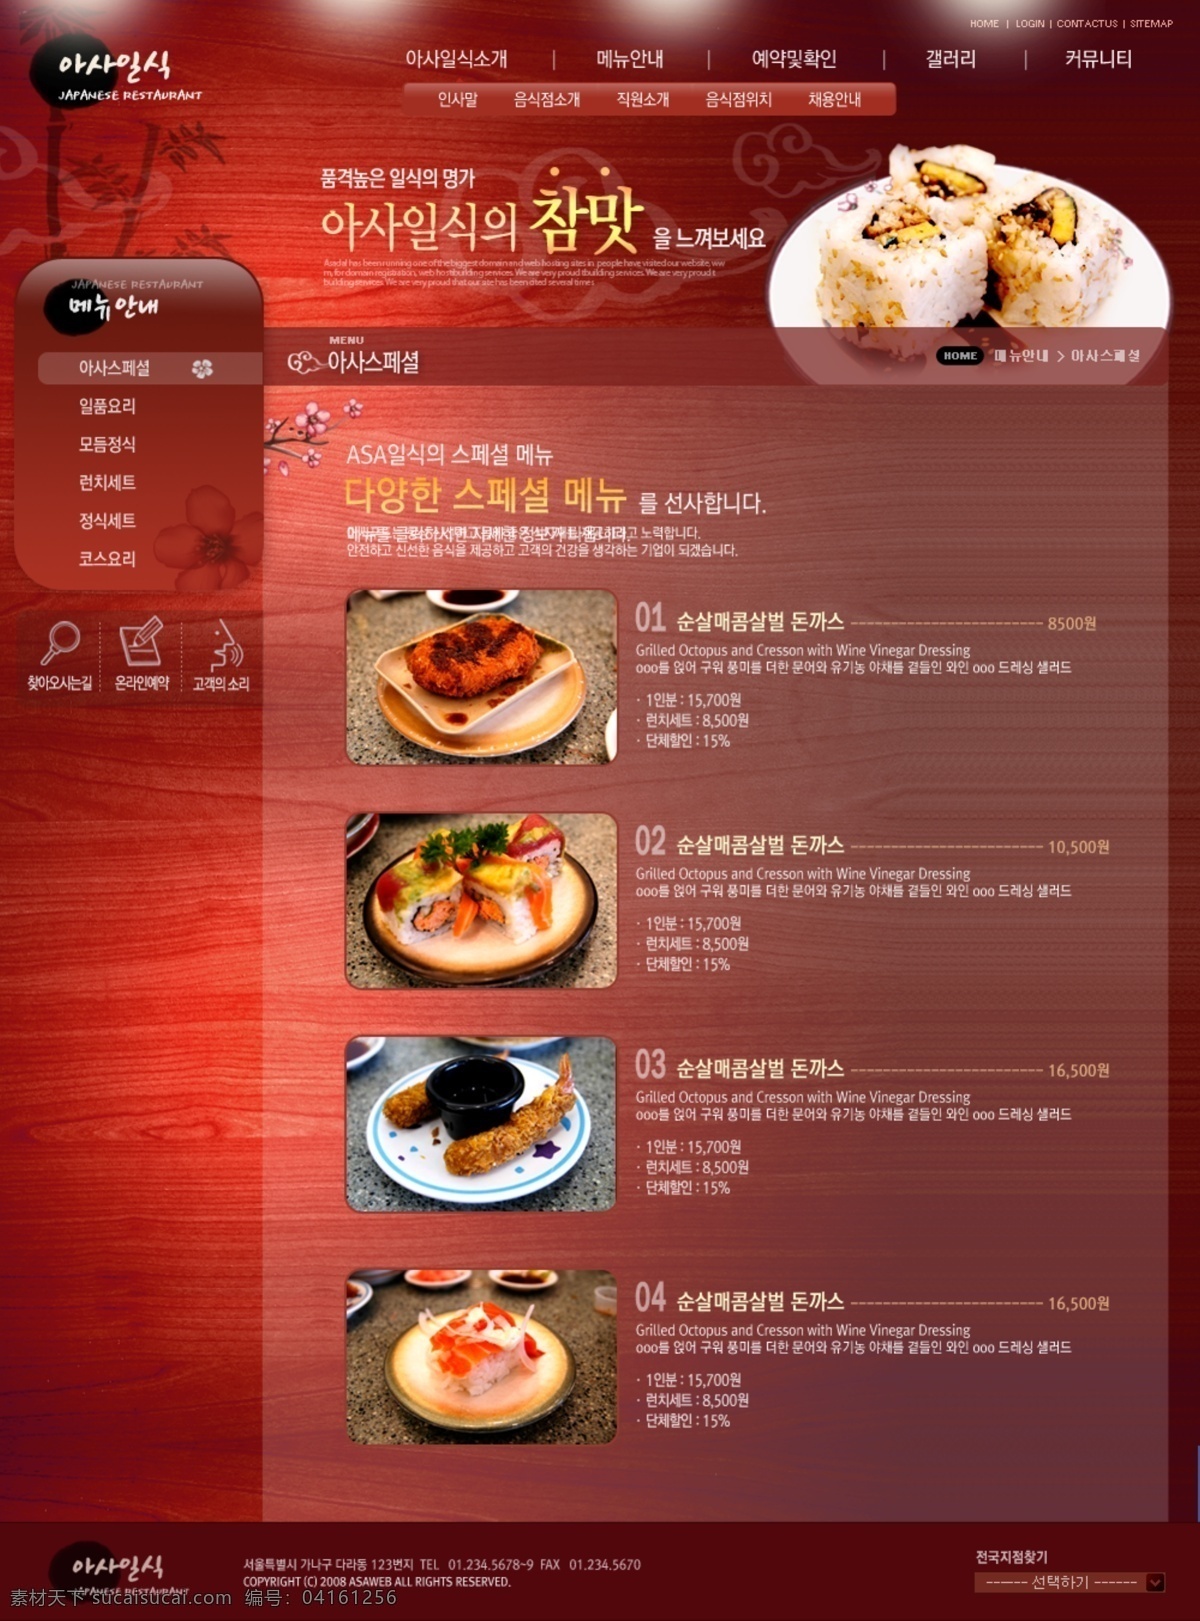 红色 韩国 美食 网页模板 焐 朗 惩 衬 逅 夭 南 略 网页素材